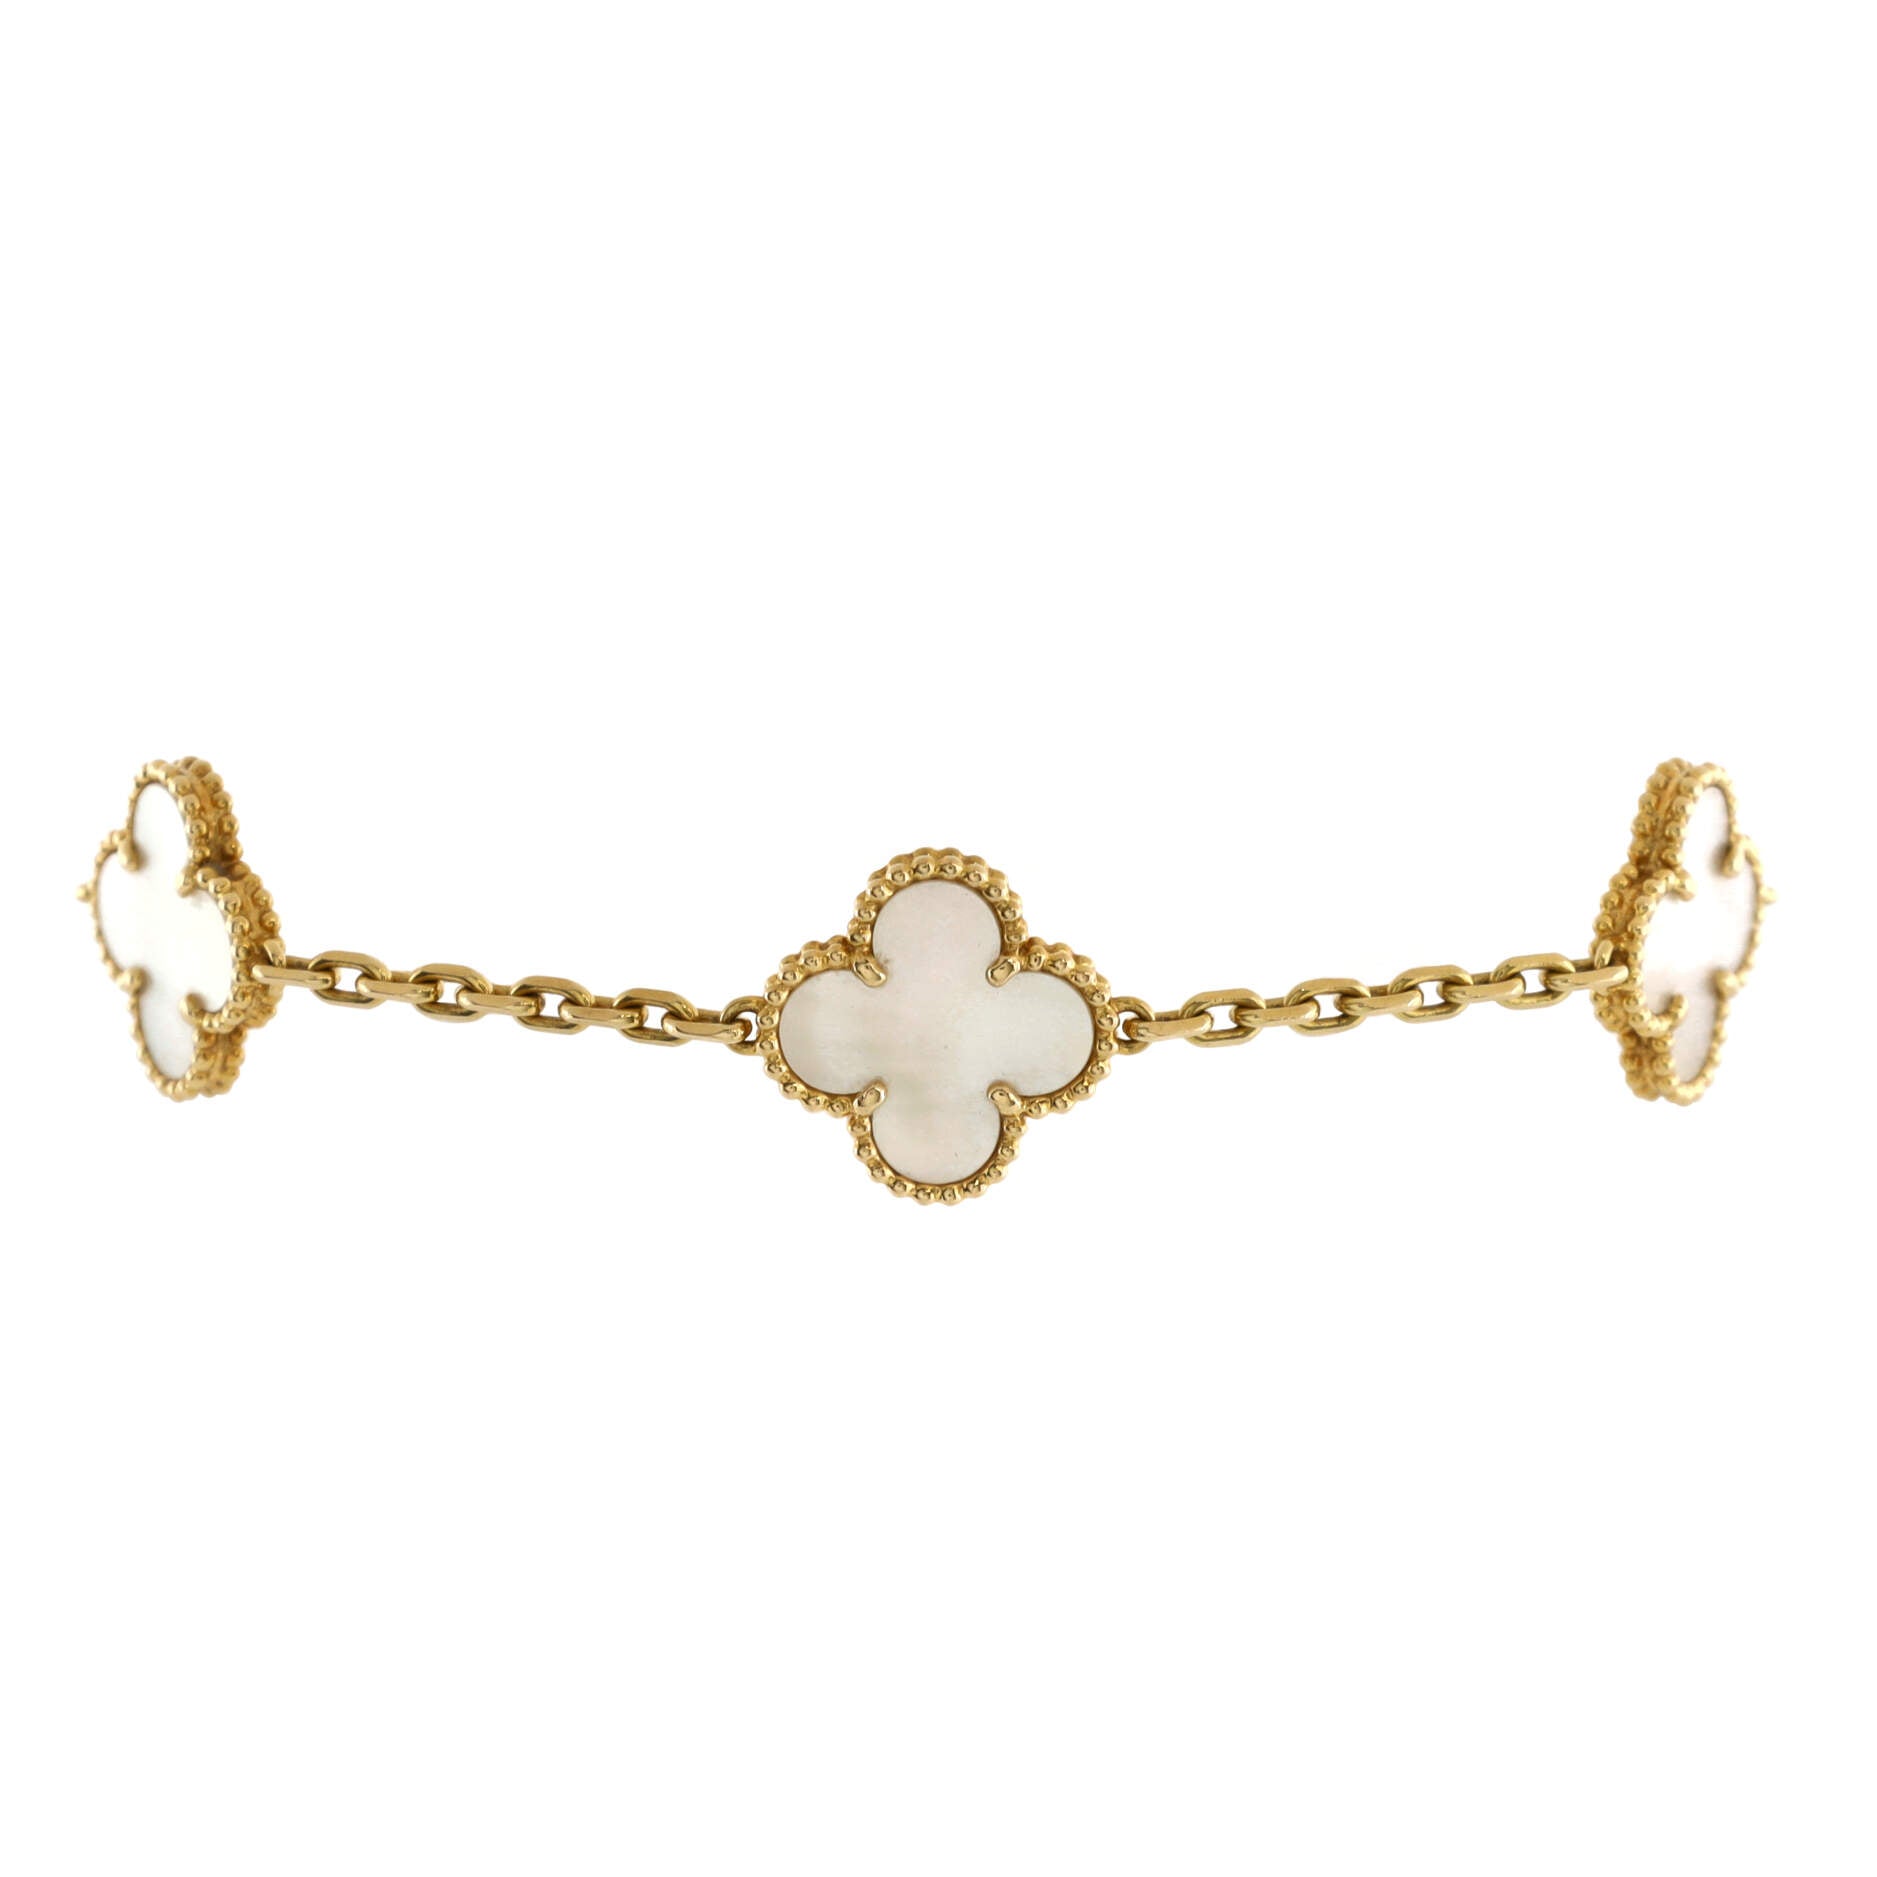 Vintage Alhambra 5 Motifs Bracelet